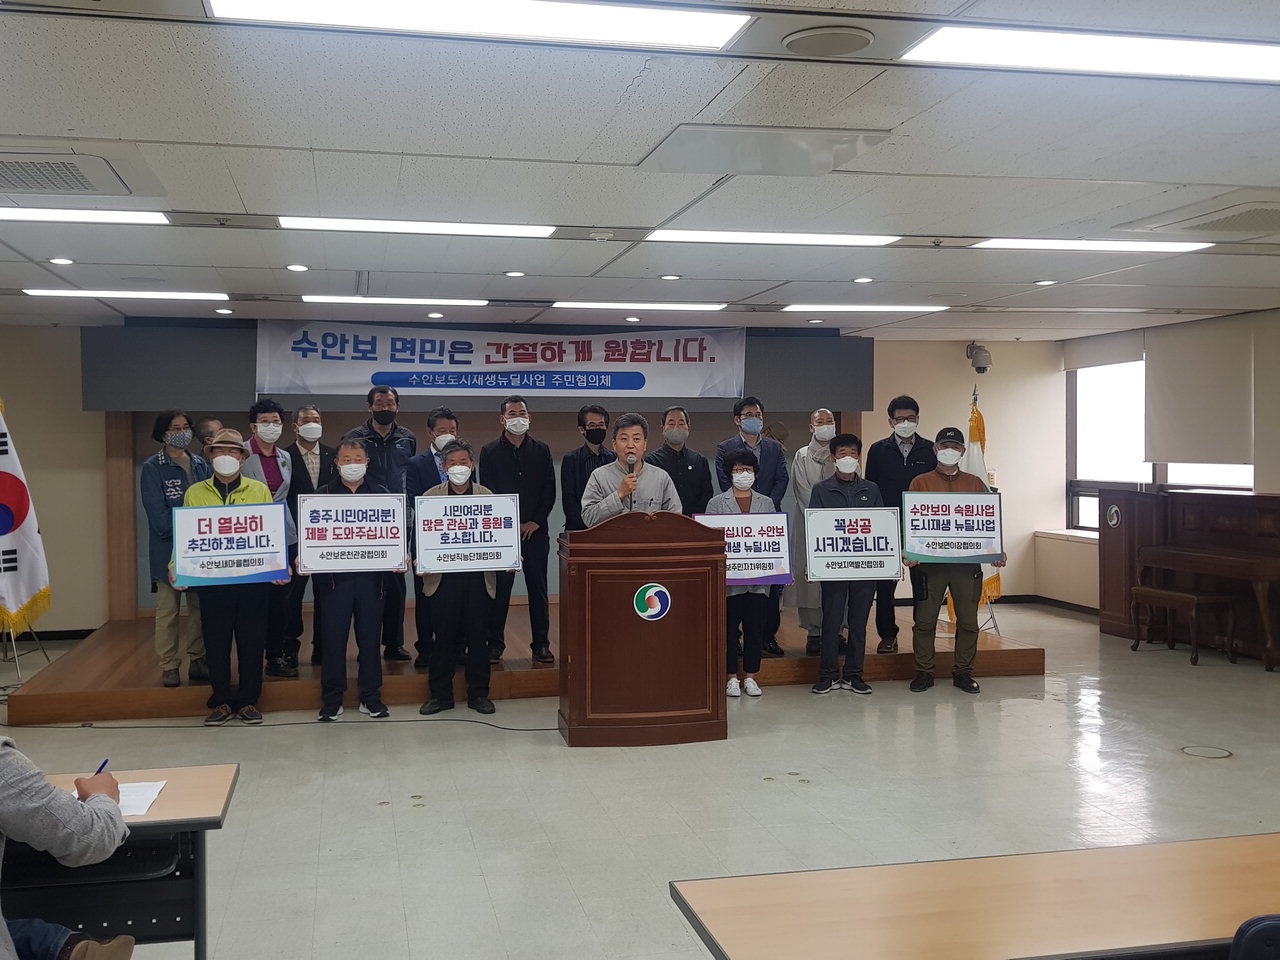 수안보도시재생뉴딜사업 주민협의체는 25일 충주시청 남한강회의실에서 수안보도시재생 사업을 촉구하는 기자회견을 열었다. / 박용성